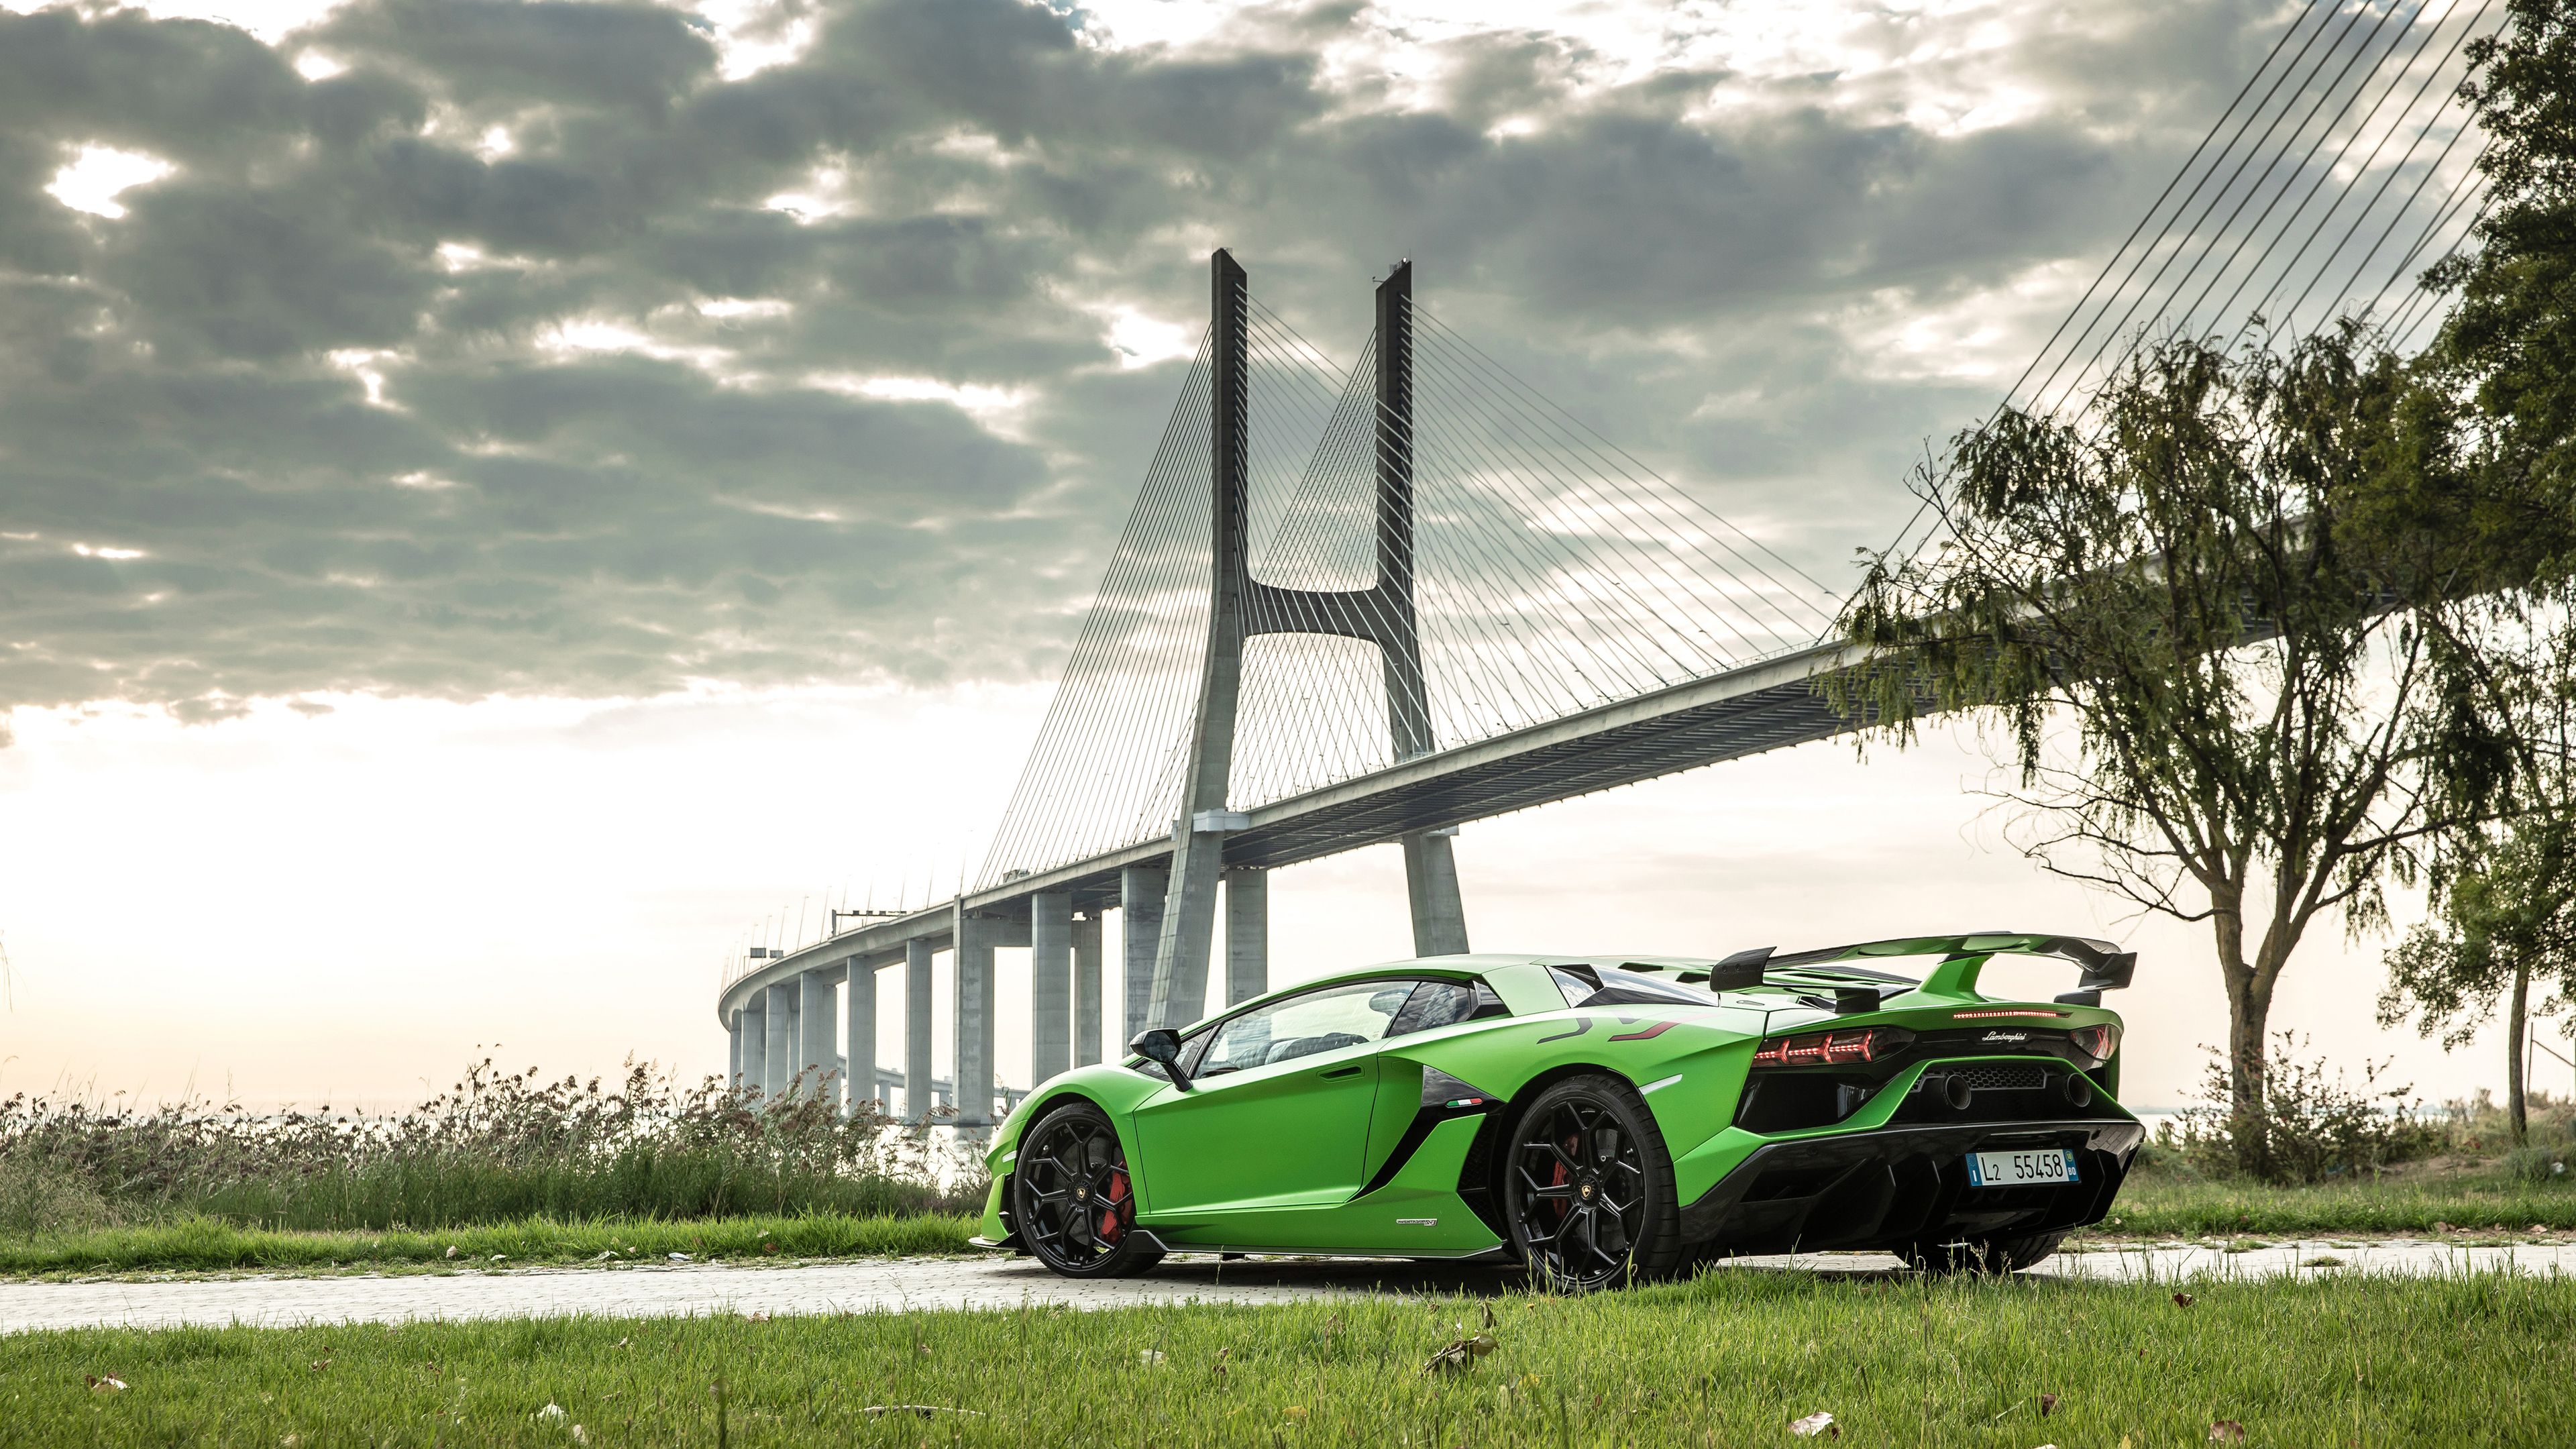 Chào mừng đến với thế giới siêu xe với chiếc Lamborghini xuất hiện trong bức ảnh này. Hãy nhanh chóng chiêm ngưỡng mẫu xe đầy sức mạnh này, với kiểu dáng đẹp mắt và khung xe nhẹ. Sự độc đáo và cá tính của Lamborghini chắc chắn sẽ khiến bạn phải say mê.